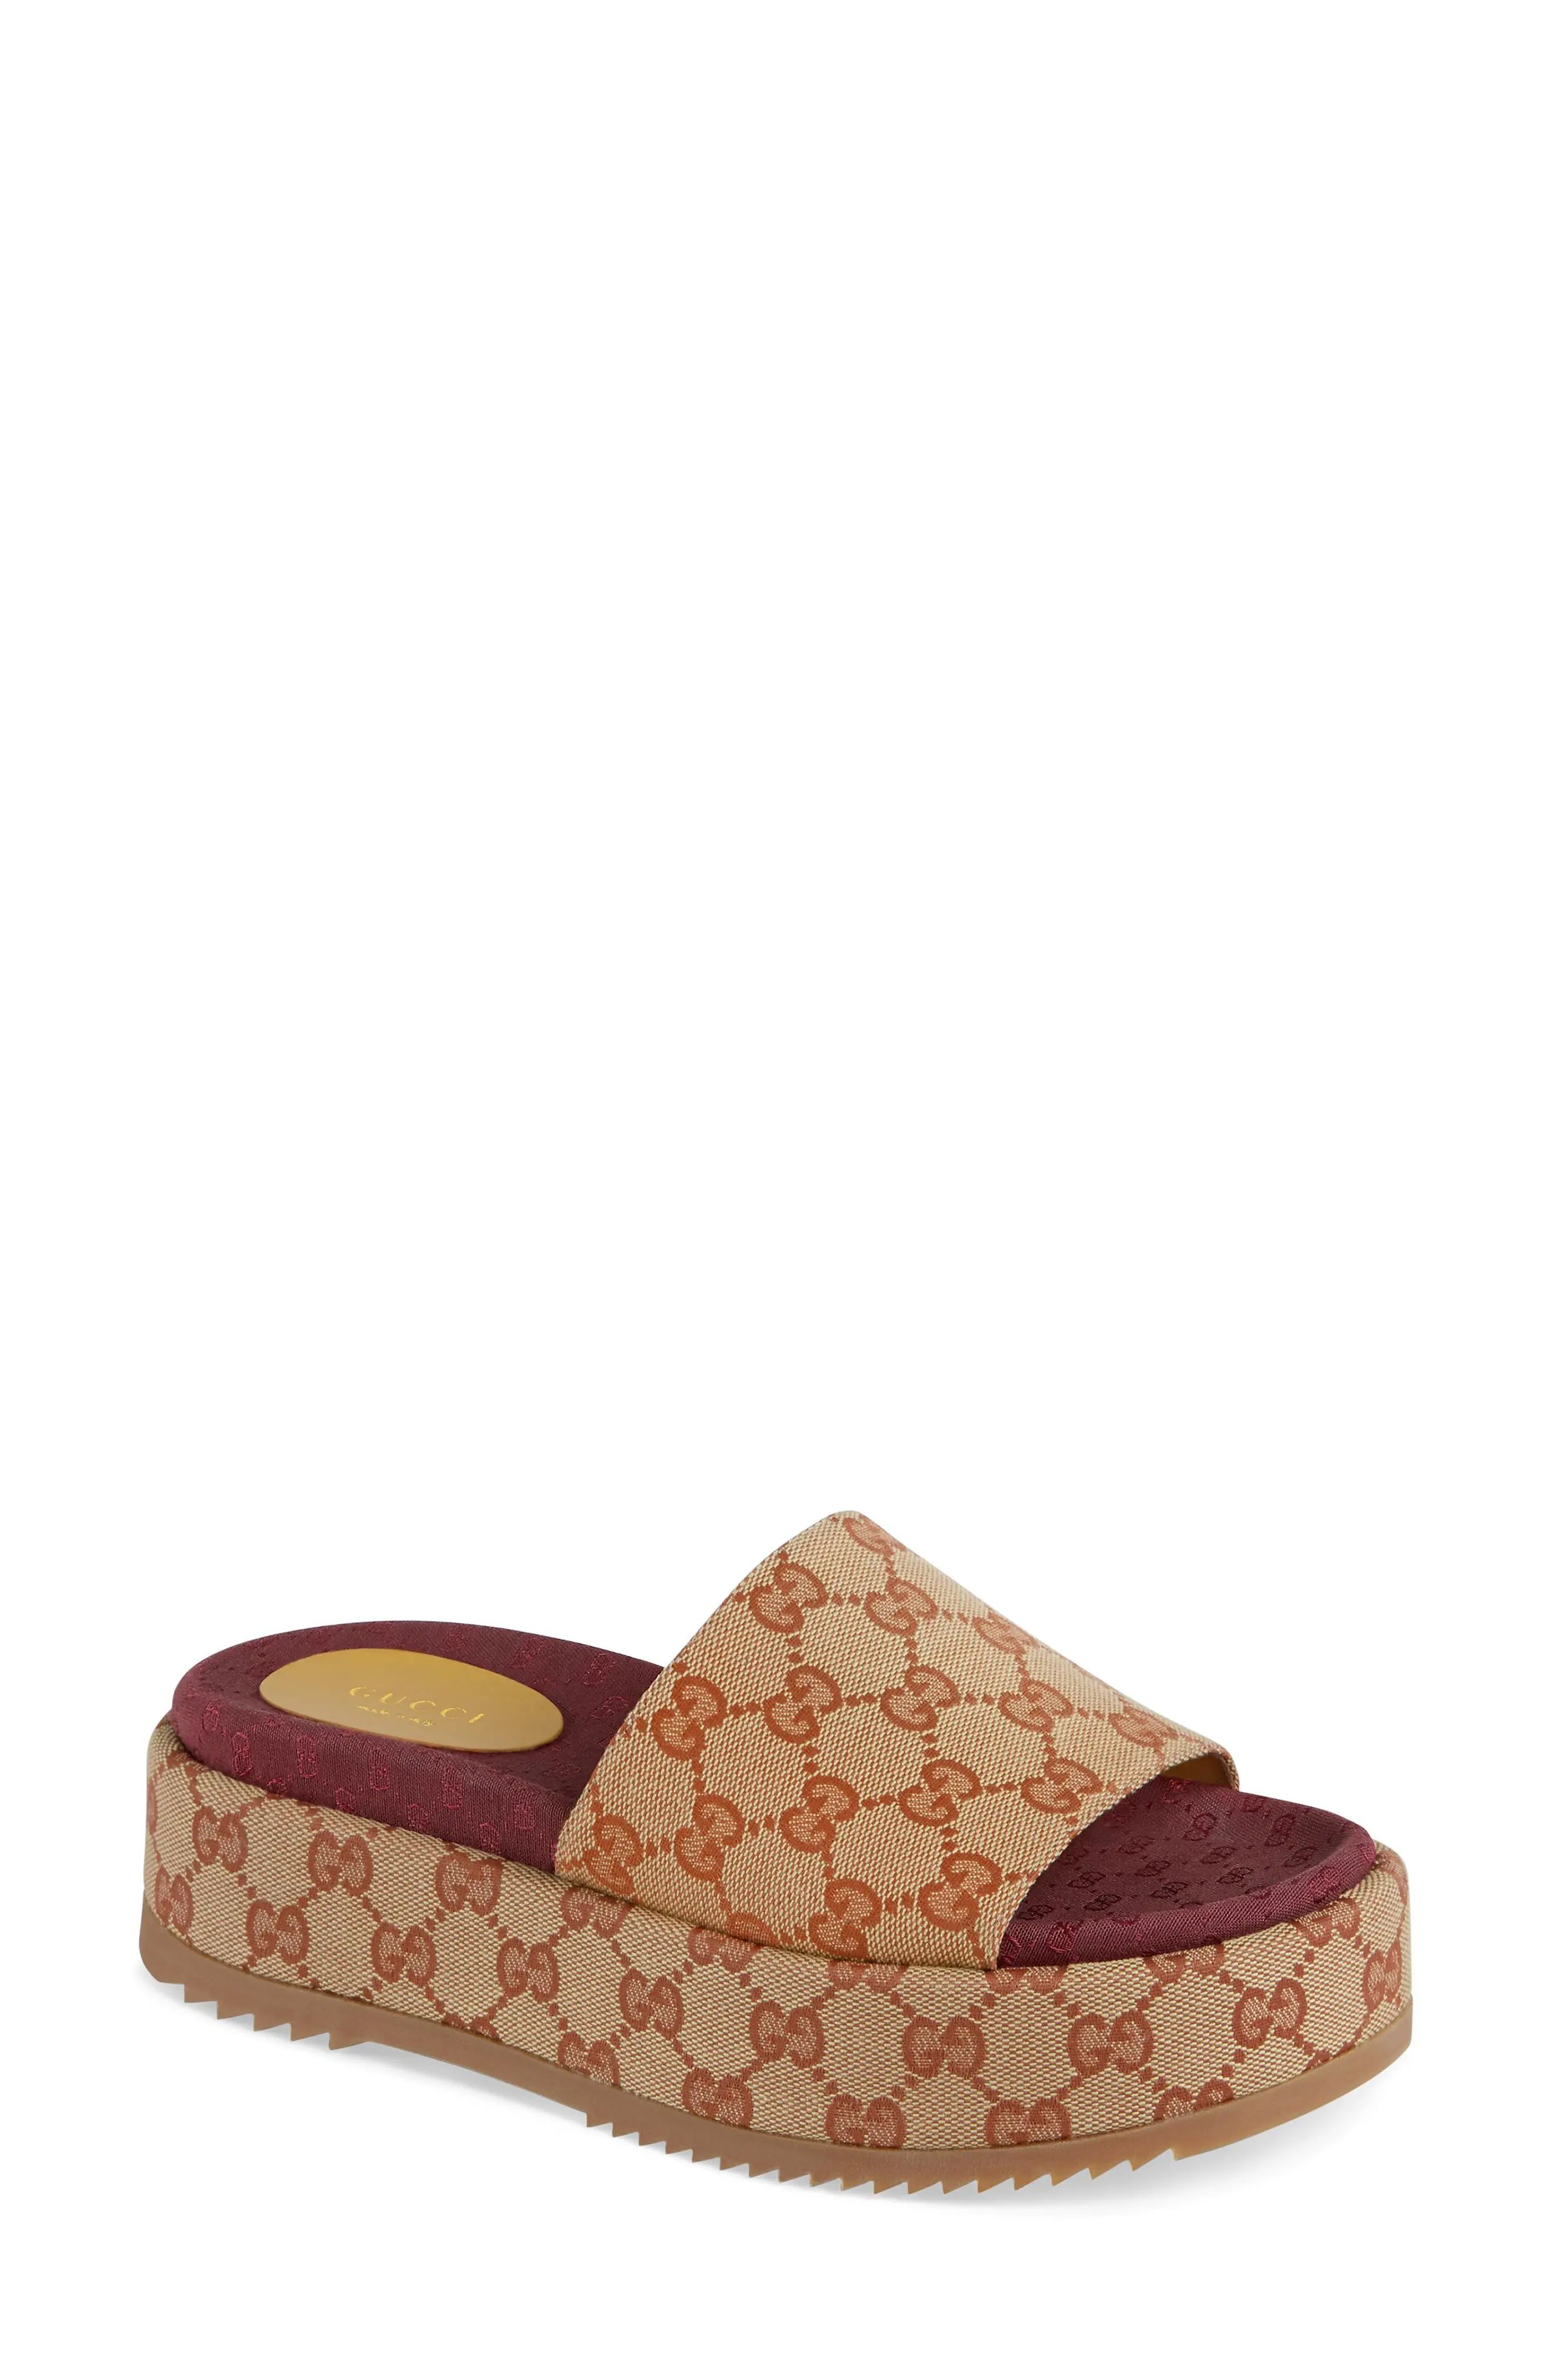 Women's Gucci Angelina Gg Supreme Platform Slide Sandal, Size 9.5US - Beige | Nordstrom